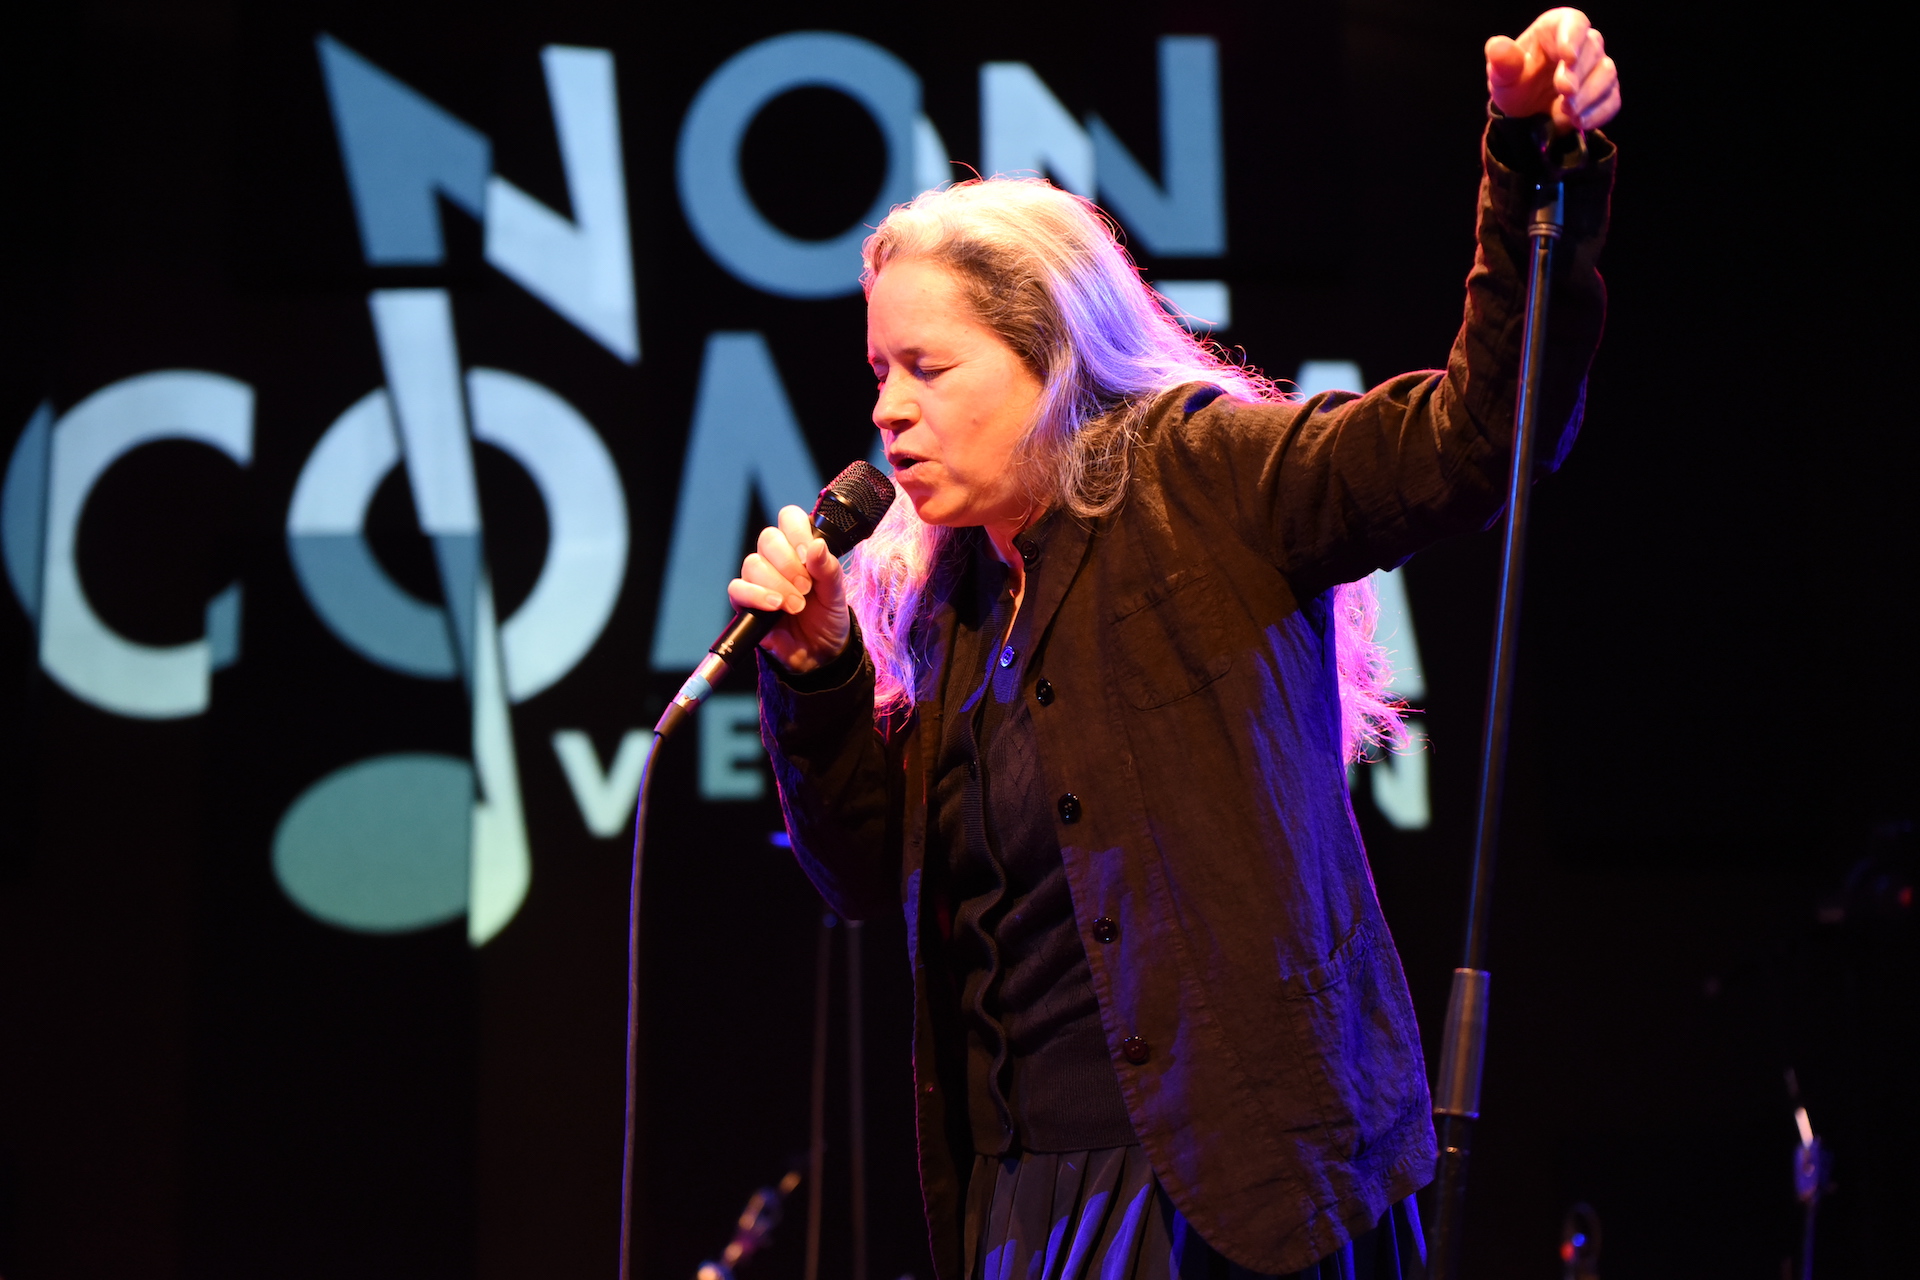 Natalie Merchant's commanding set hushes the crowd WXPN